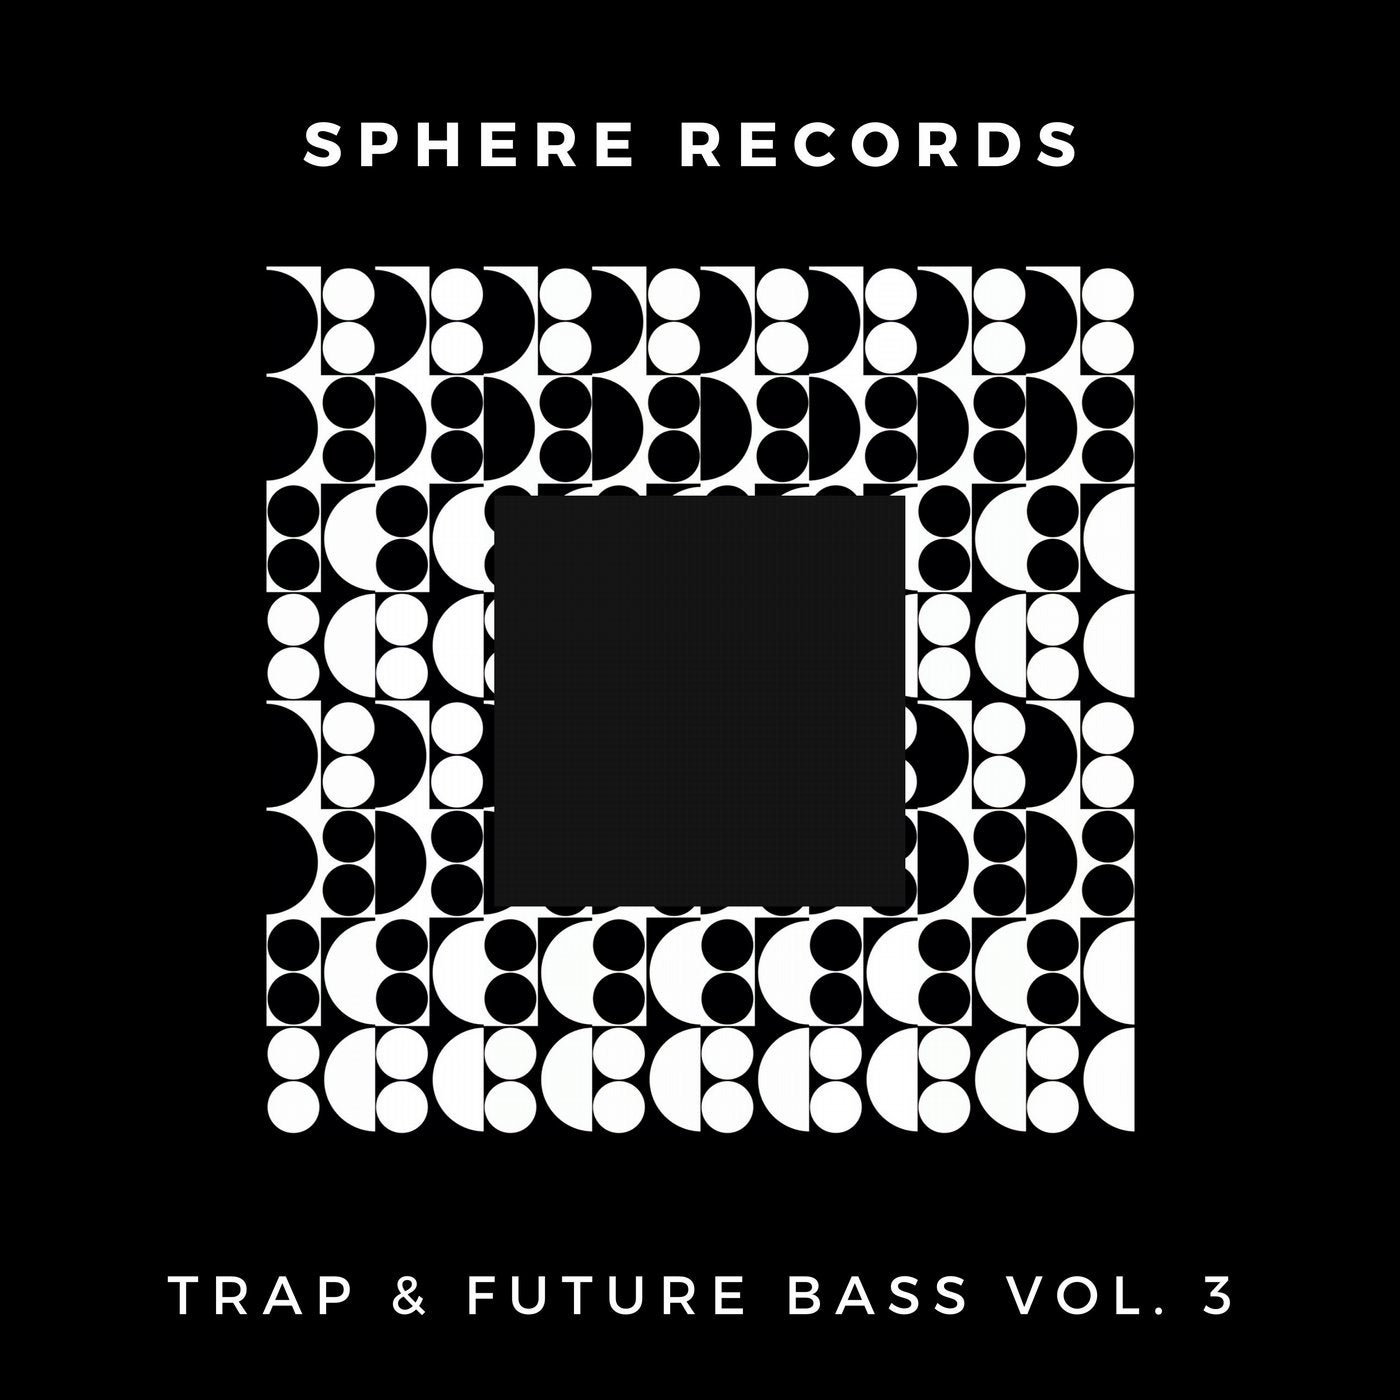 Trap & Future Bass, Vol. 3